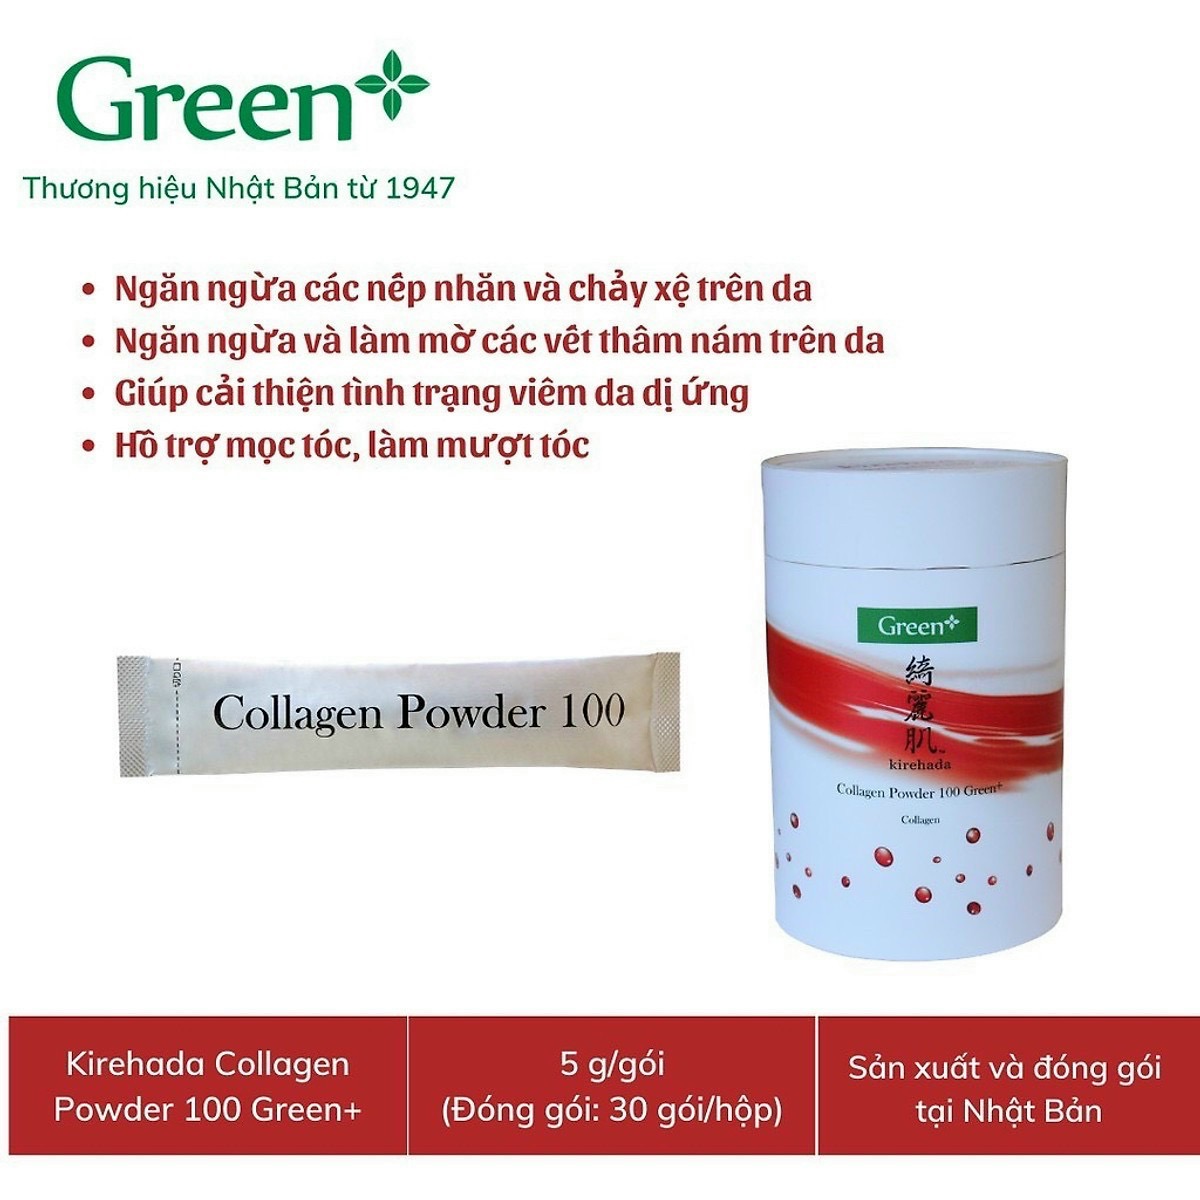 Collagen powder 100 Green+